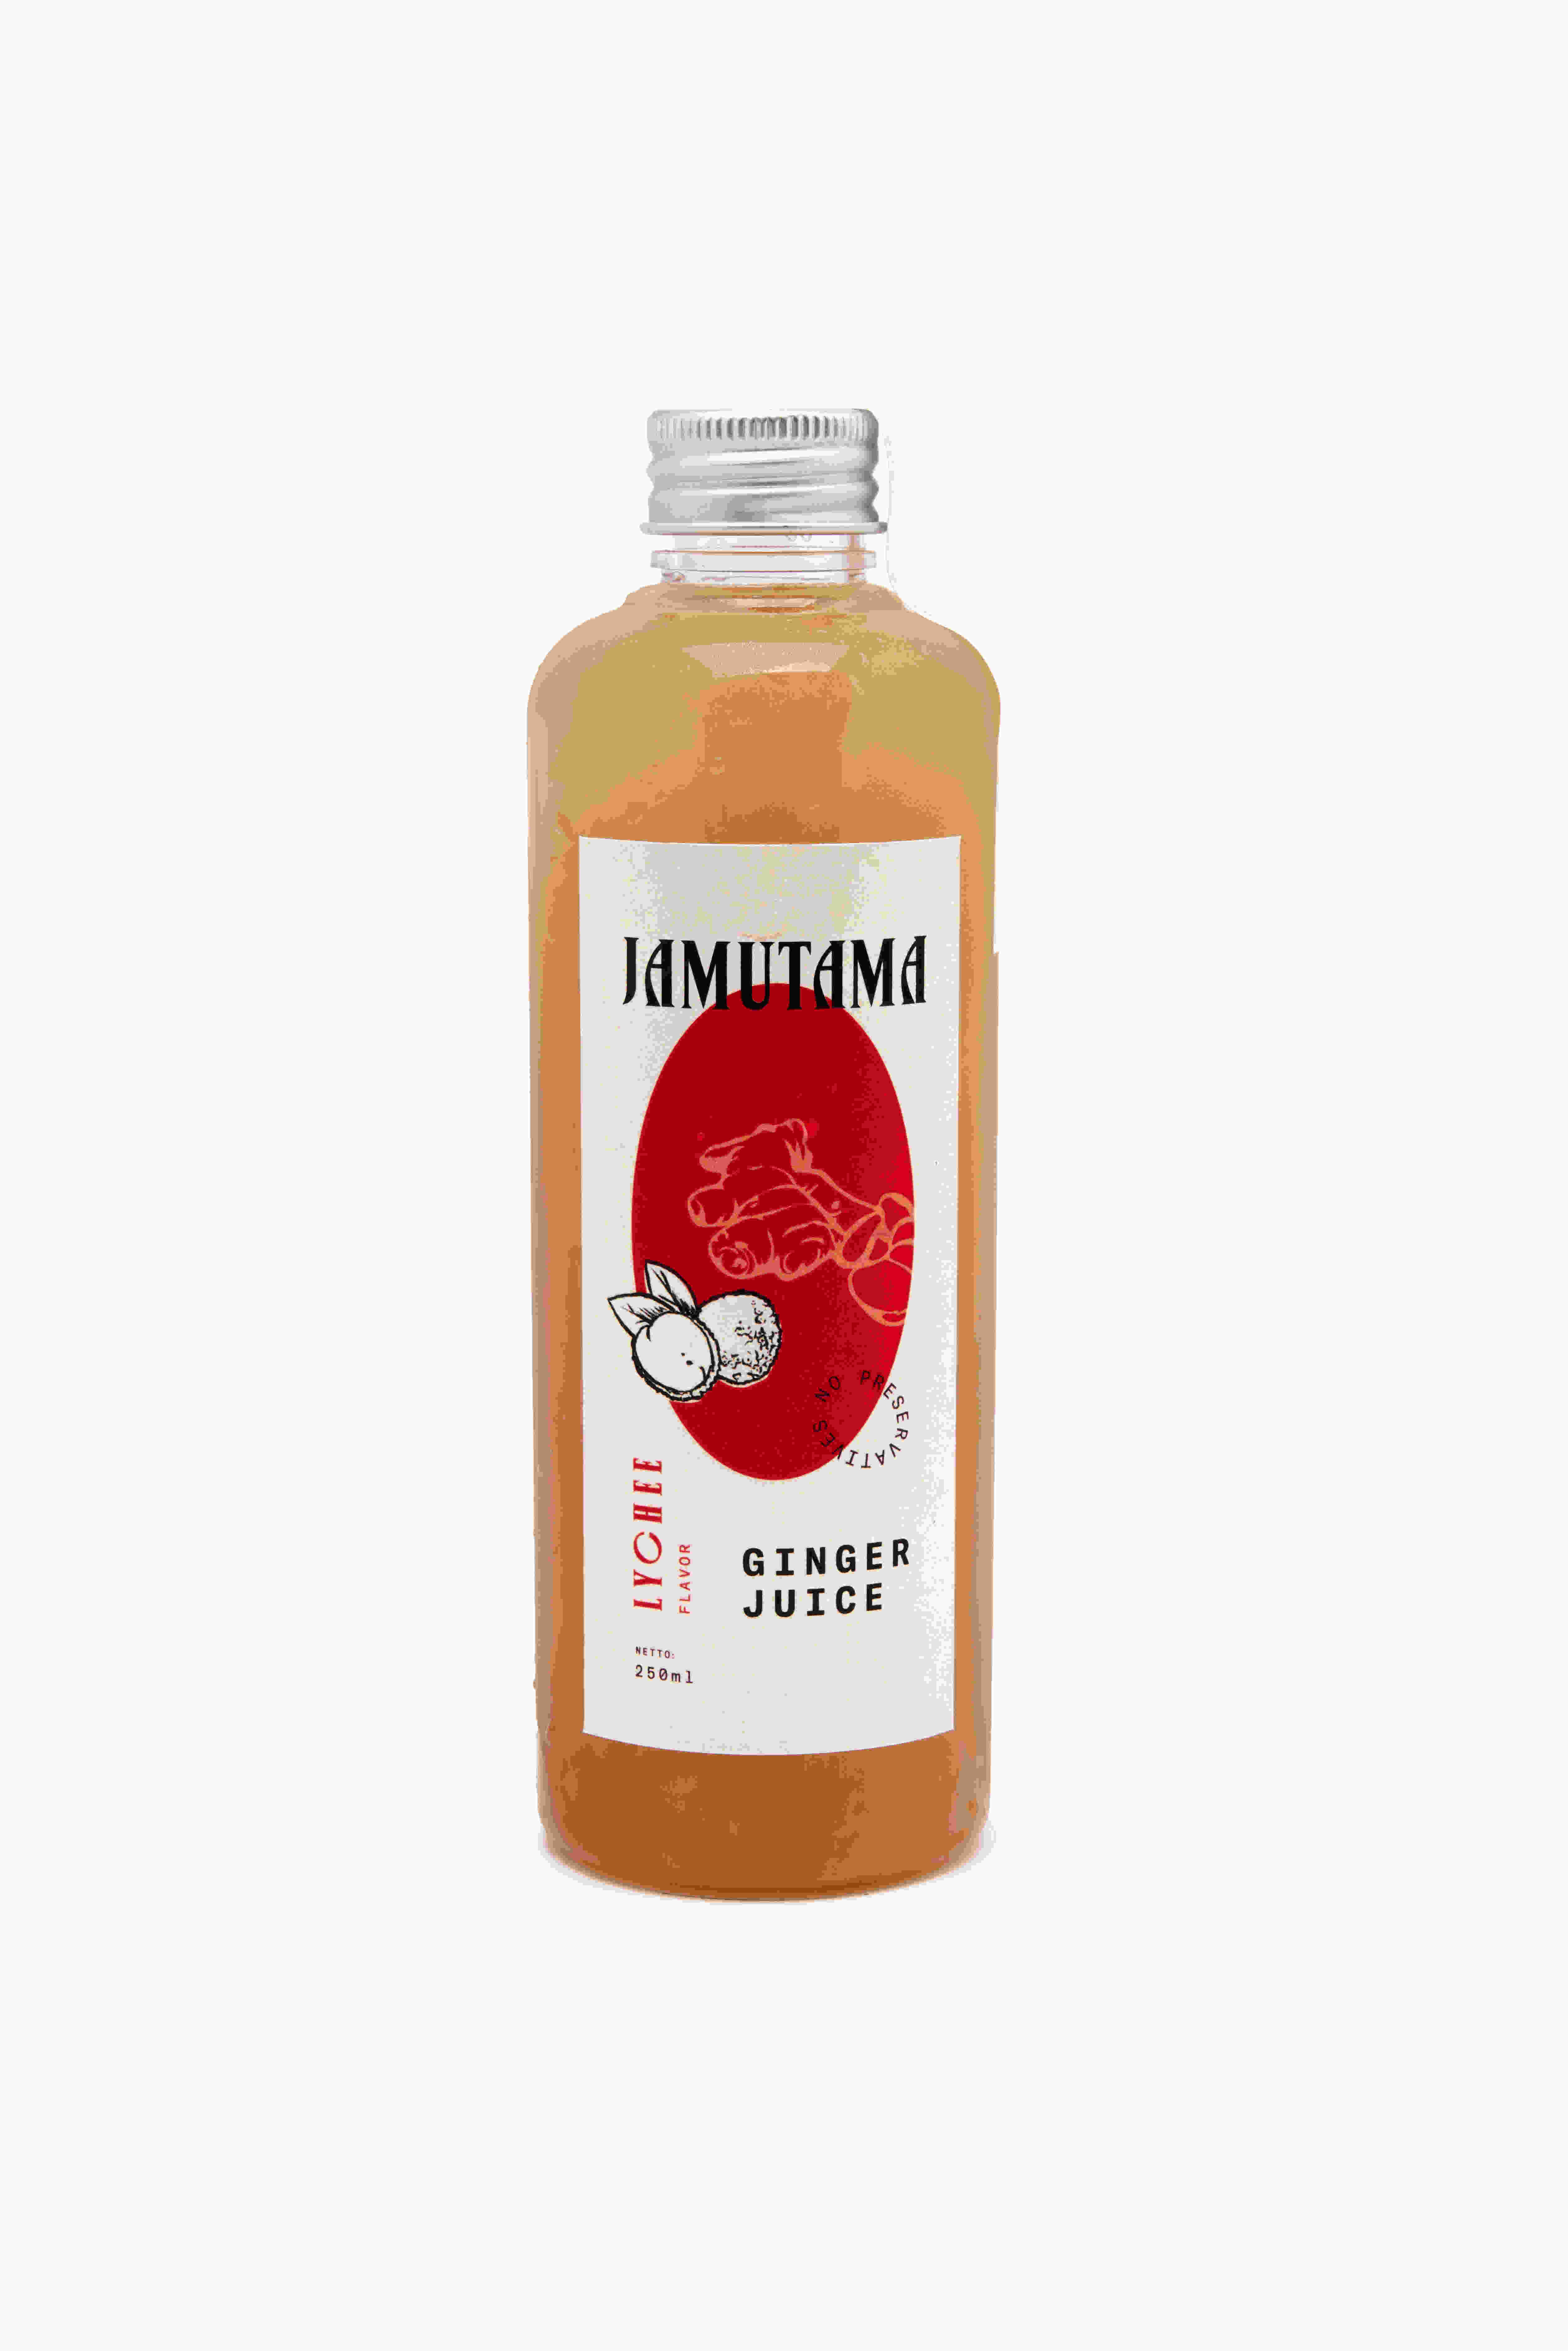 Jamutama Ginger Juice Lychee Flavor / Jahe Rasa Leci (250ml)